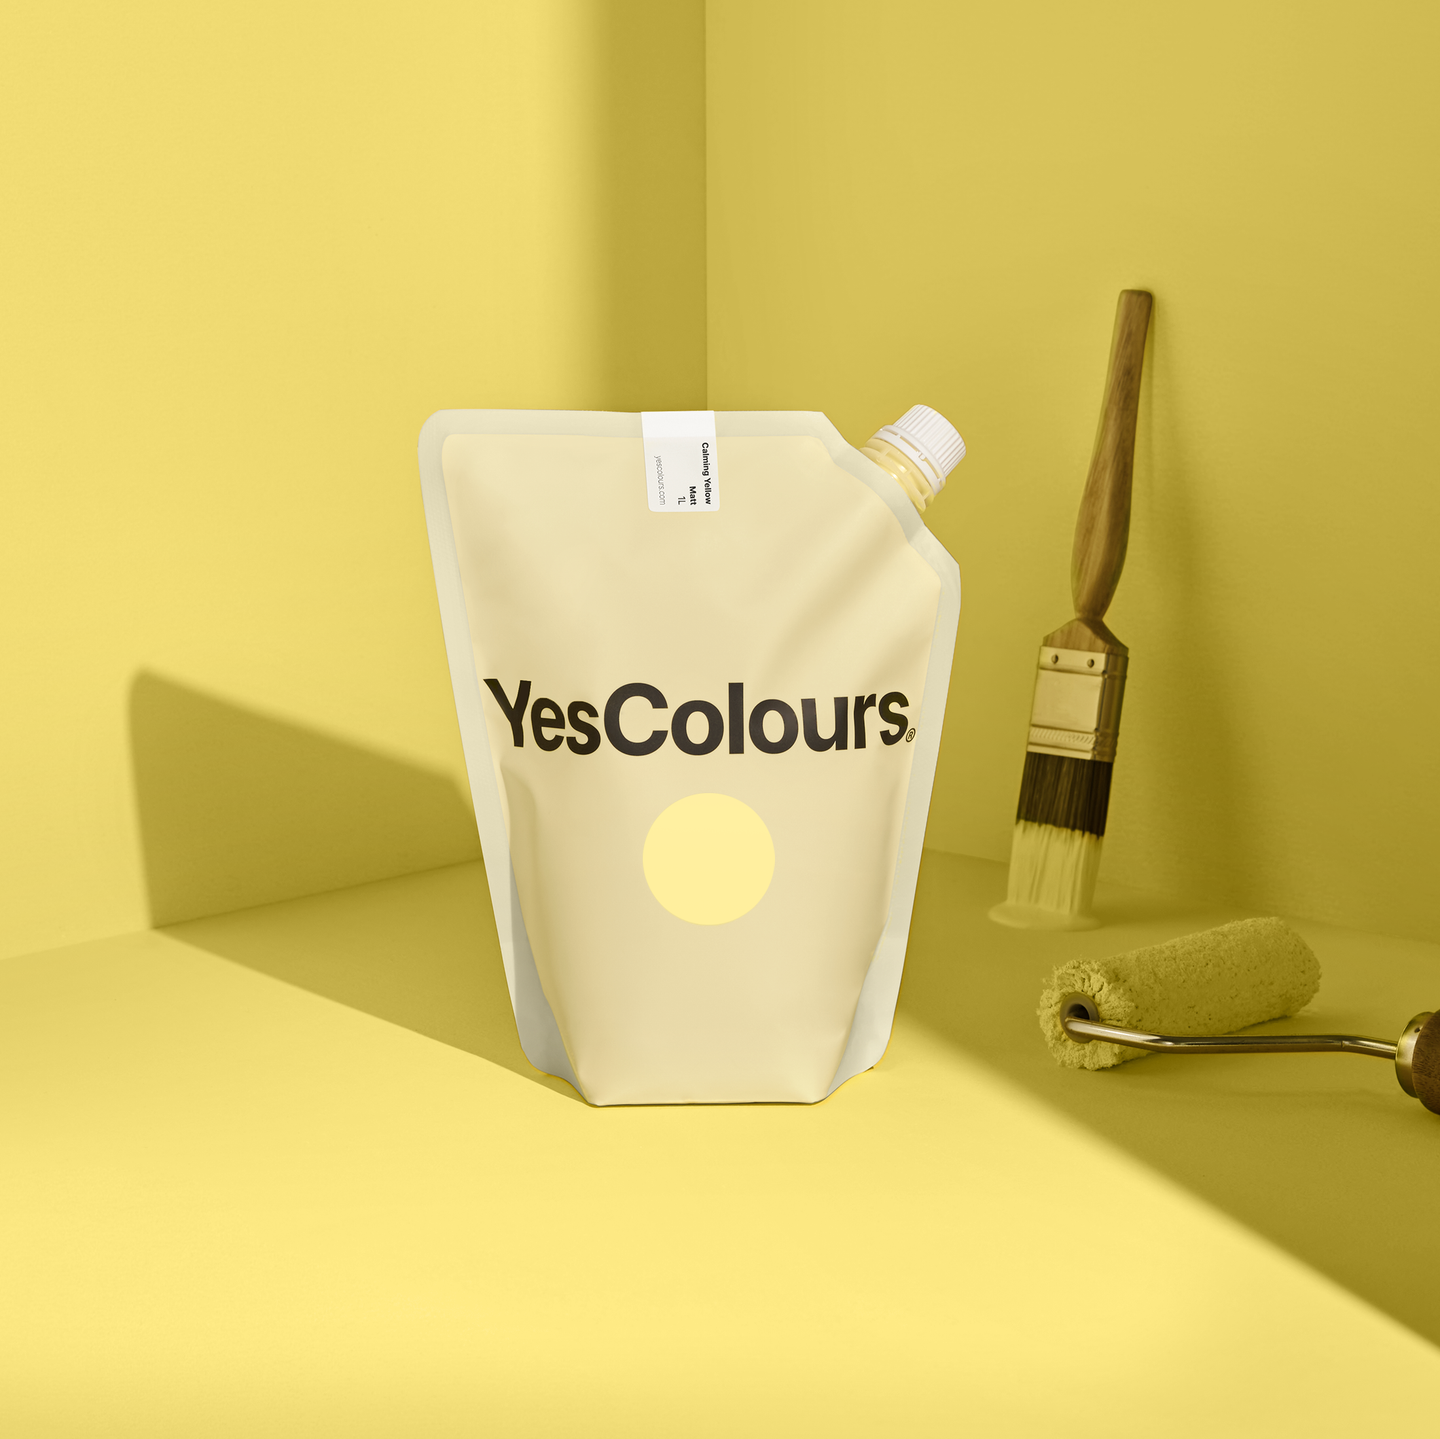 YesColours premium Calming Yellow matt emulsion paint Dulux Paint, Coat Paint, Lick Paint, Edward Bulmer, Calming Matt Emulsion Paint Yellow Yellows